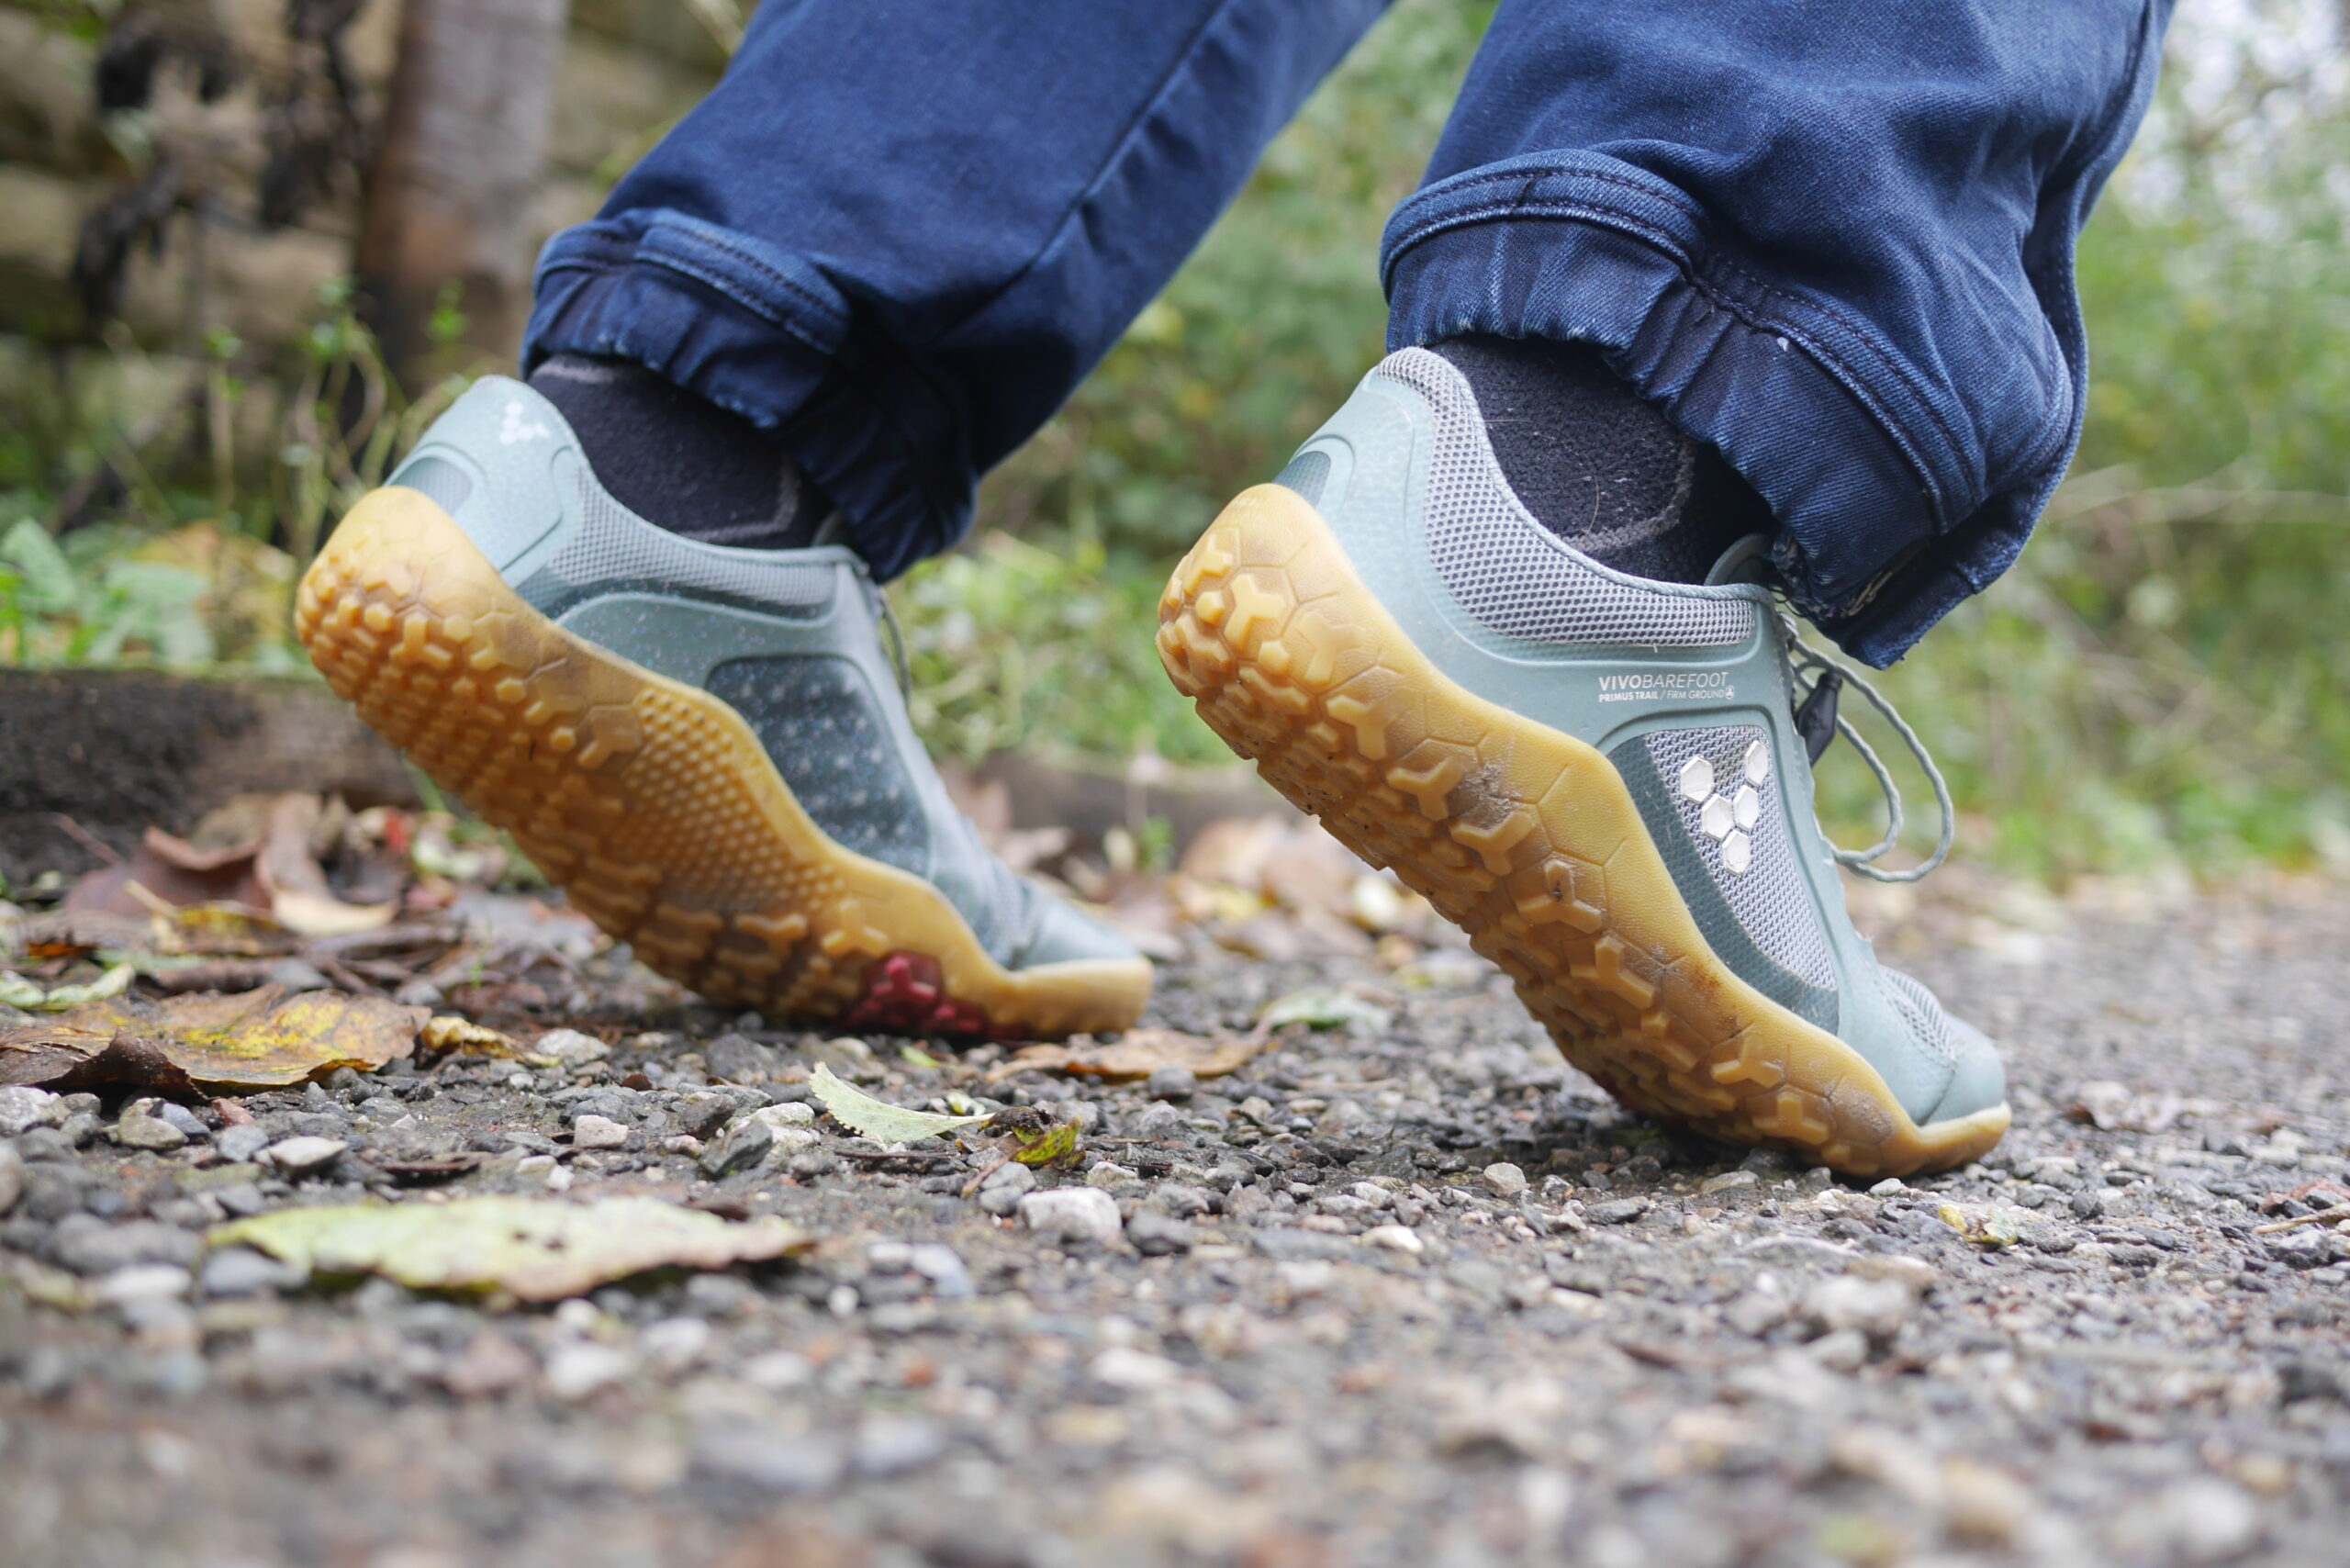 Men's Outdoor Shoes, Vivobarefoot